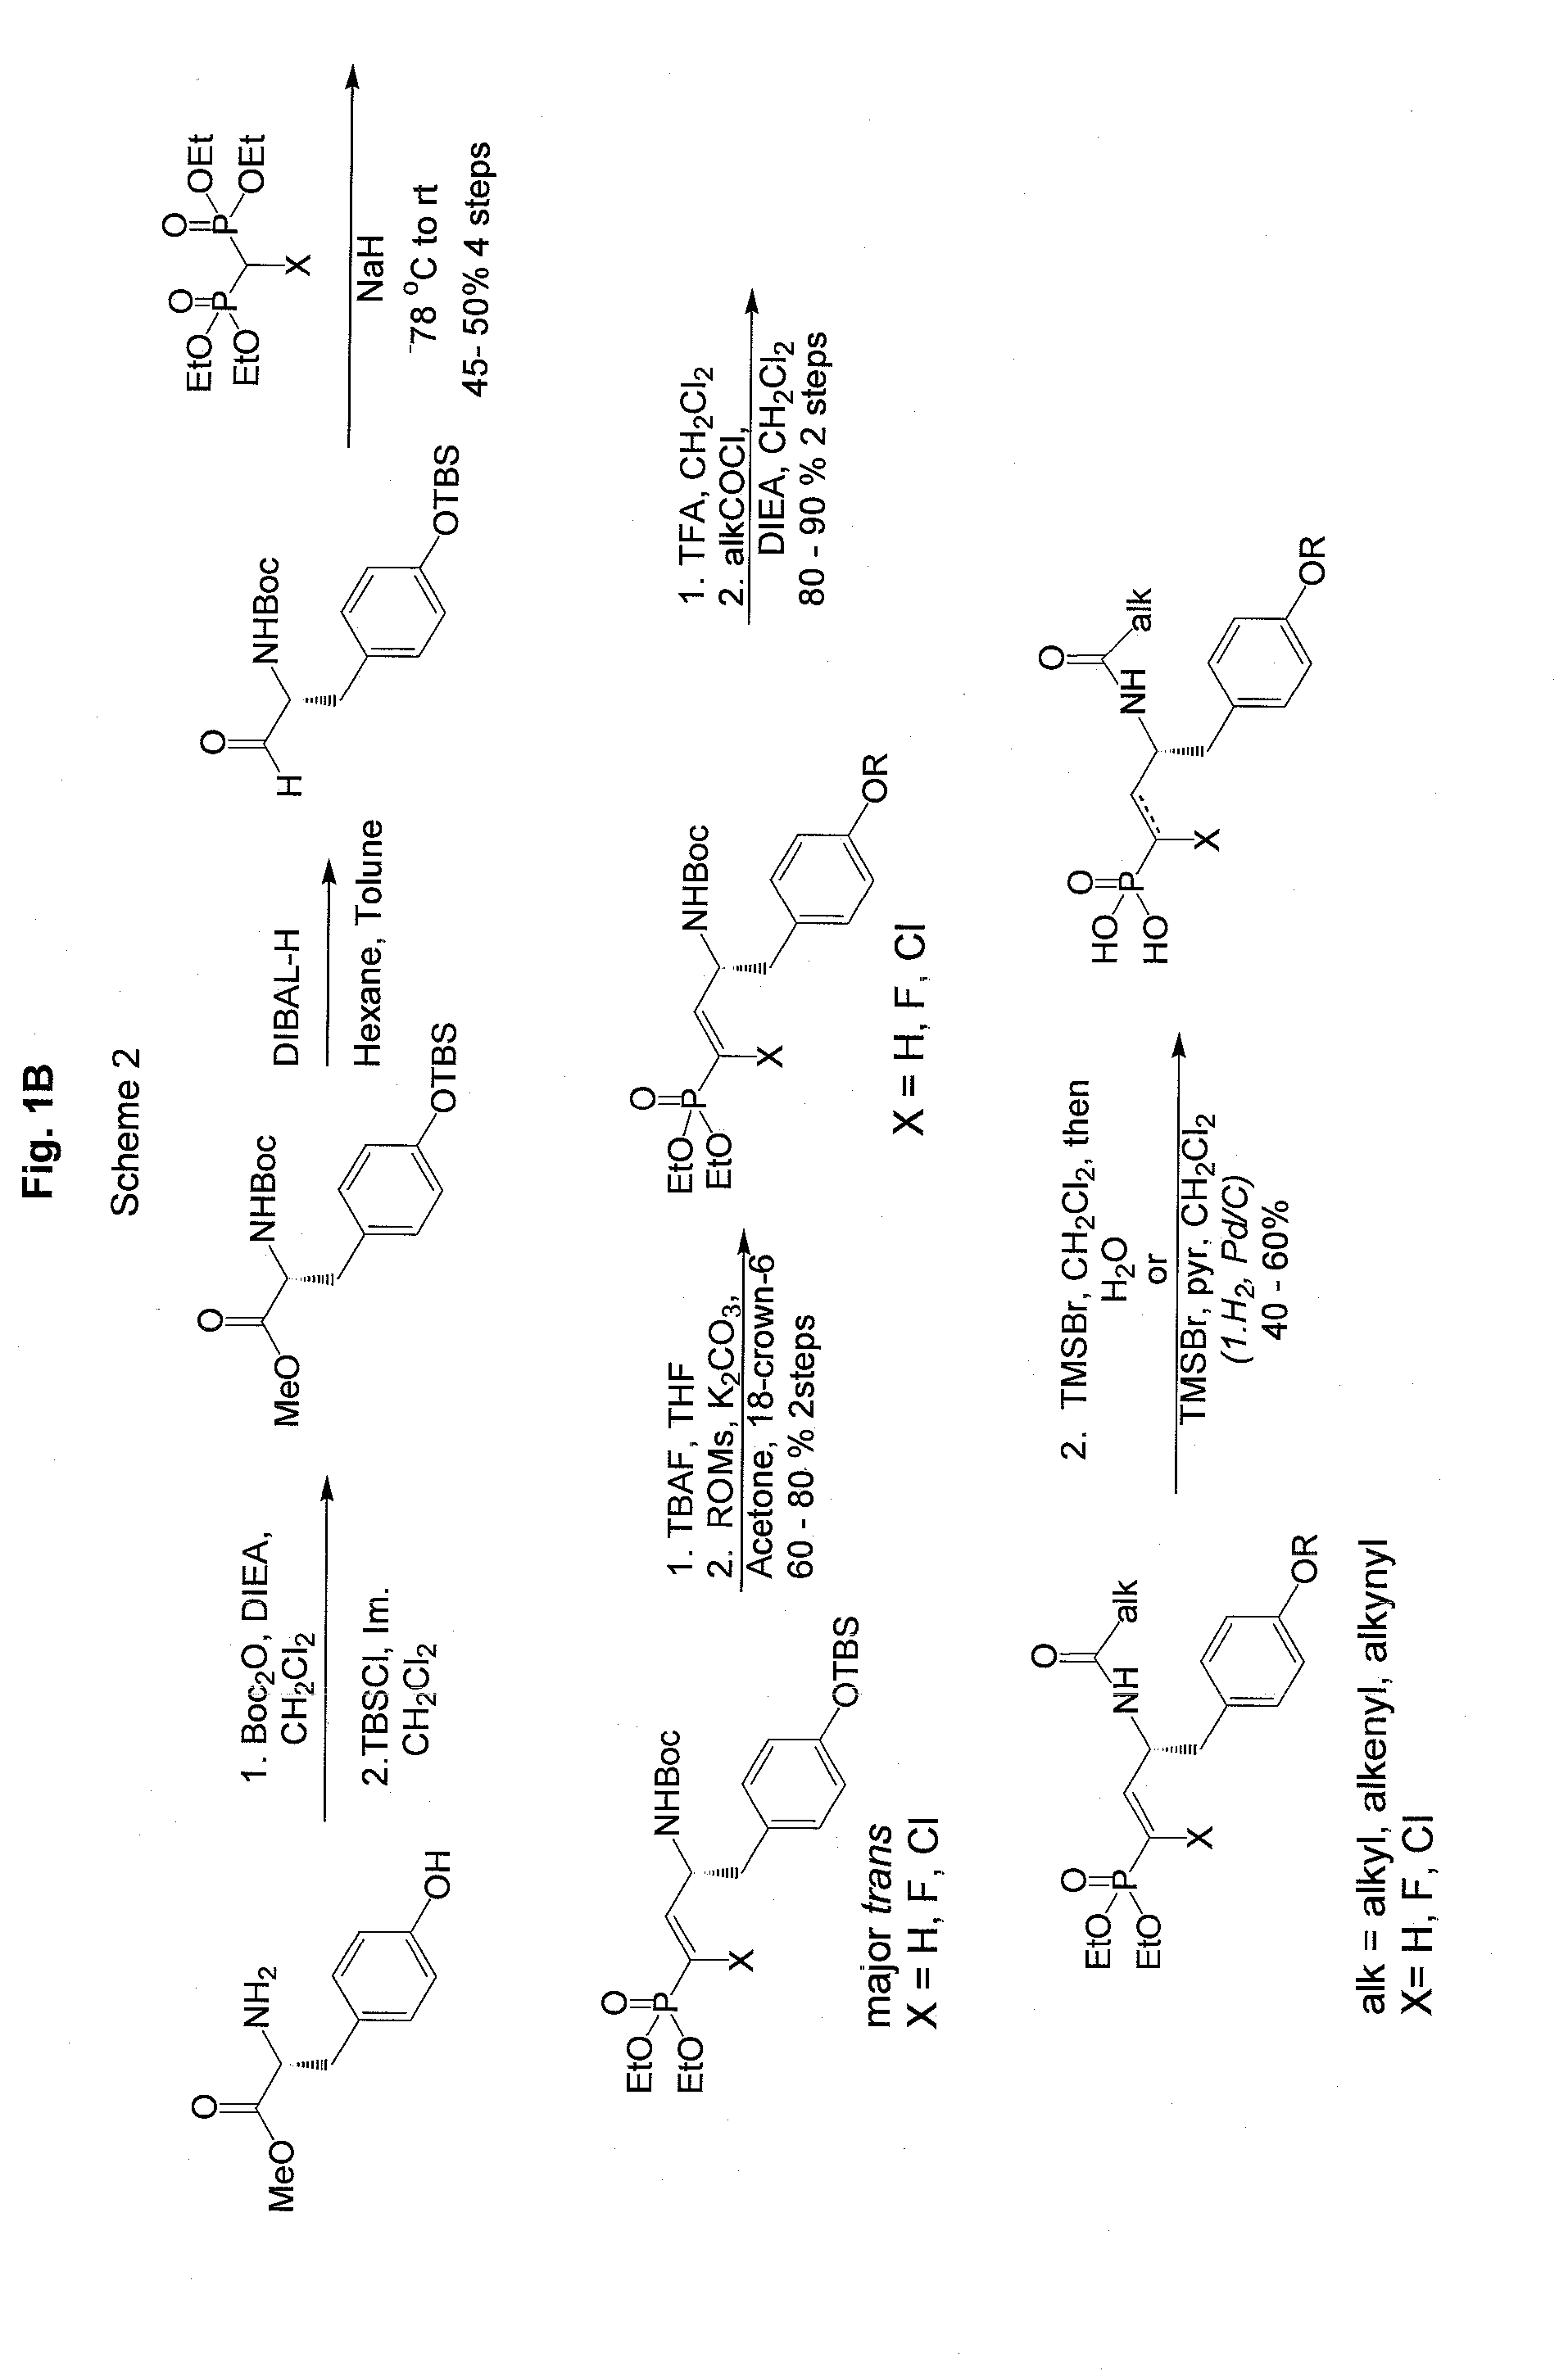 Vinyl phosphonate lysophosphatidic acid receptor antagonists